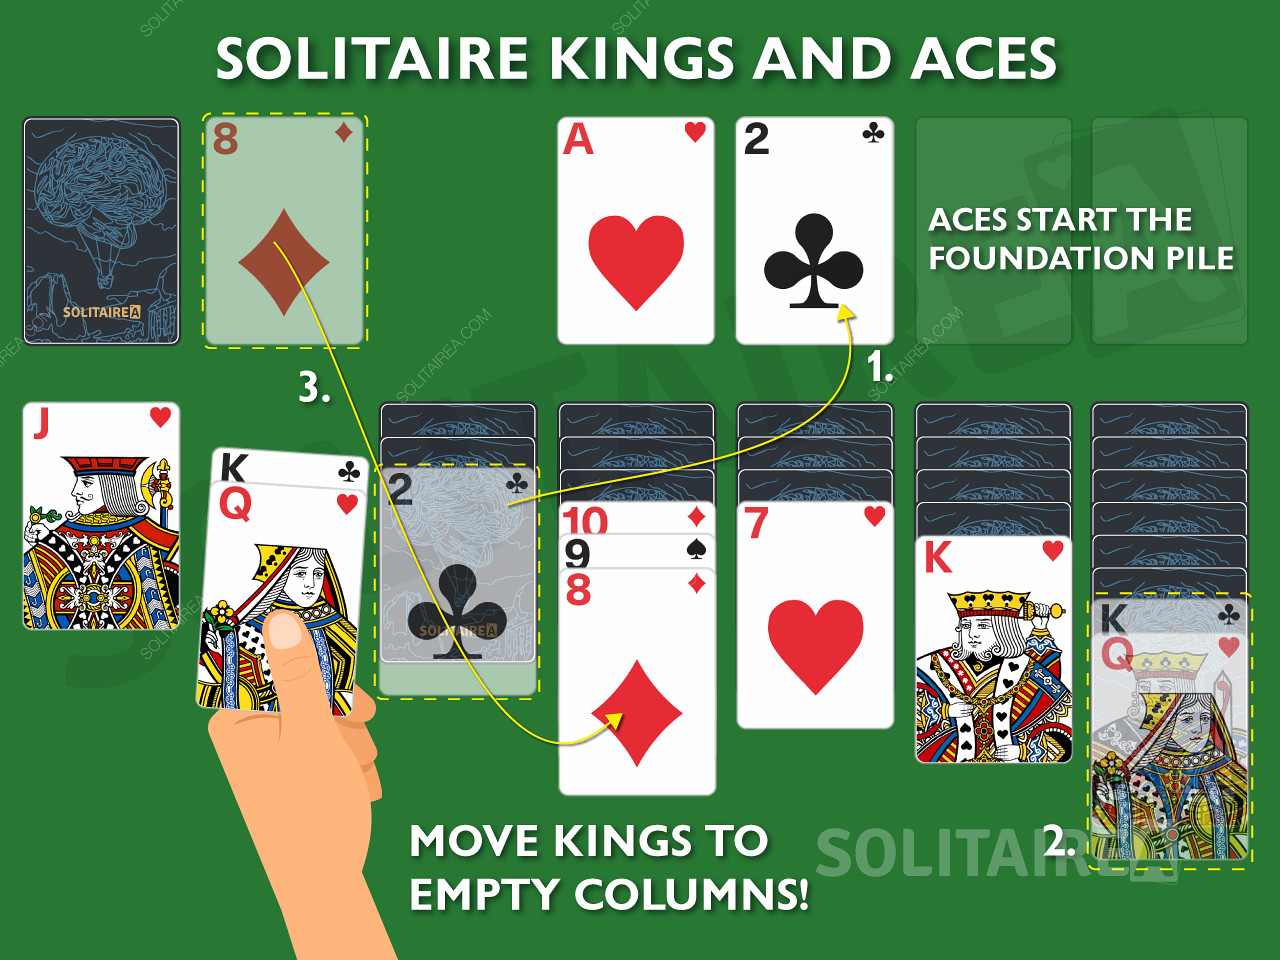 Os Reis e os Ases são cartas importantes no Solitário, uma vez que lhes são permitidas jogadas únicas.